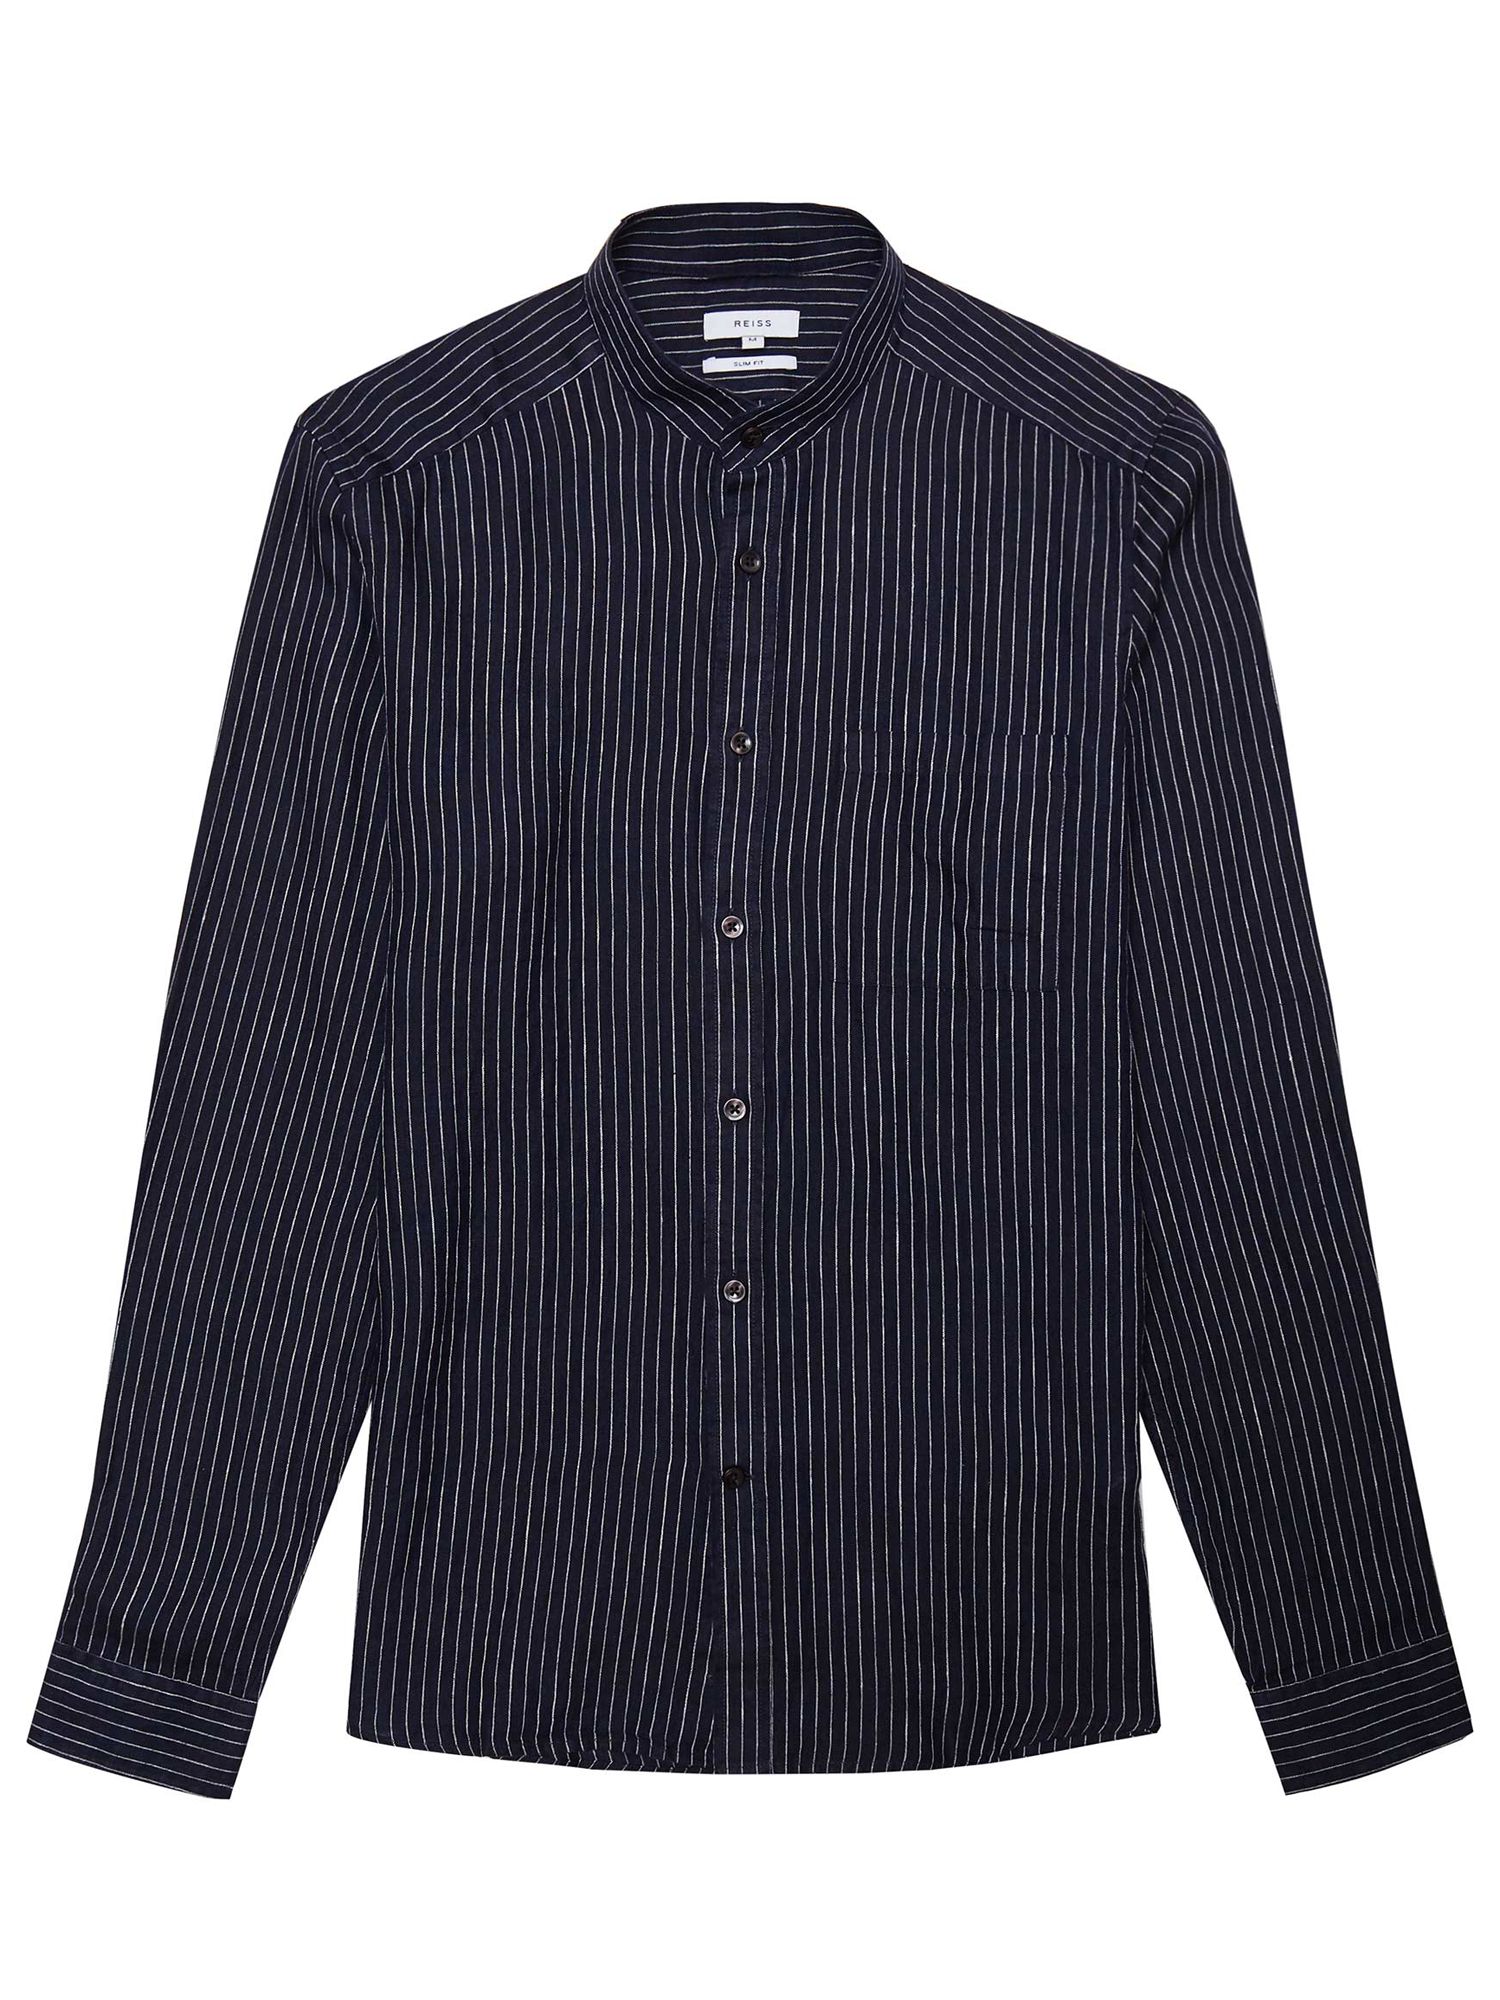 Reiss Tokyo Linen Shirt, Navy at John Lewis & Partners